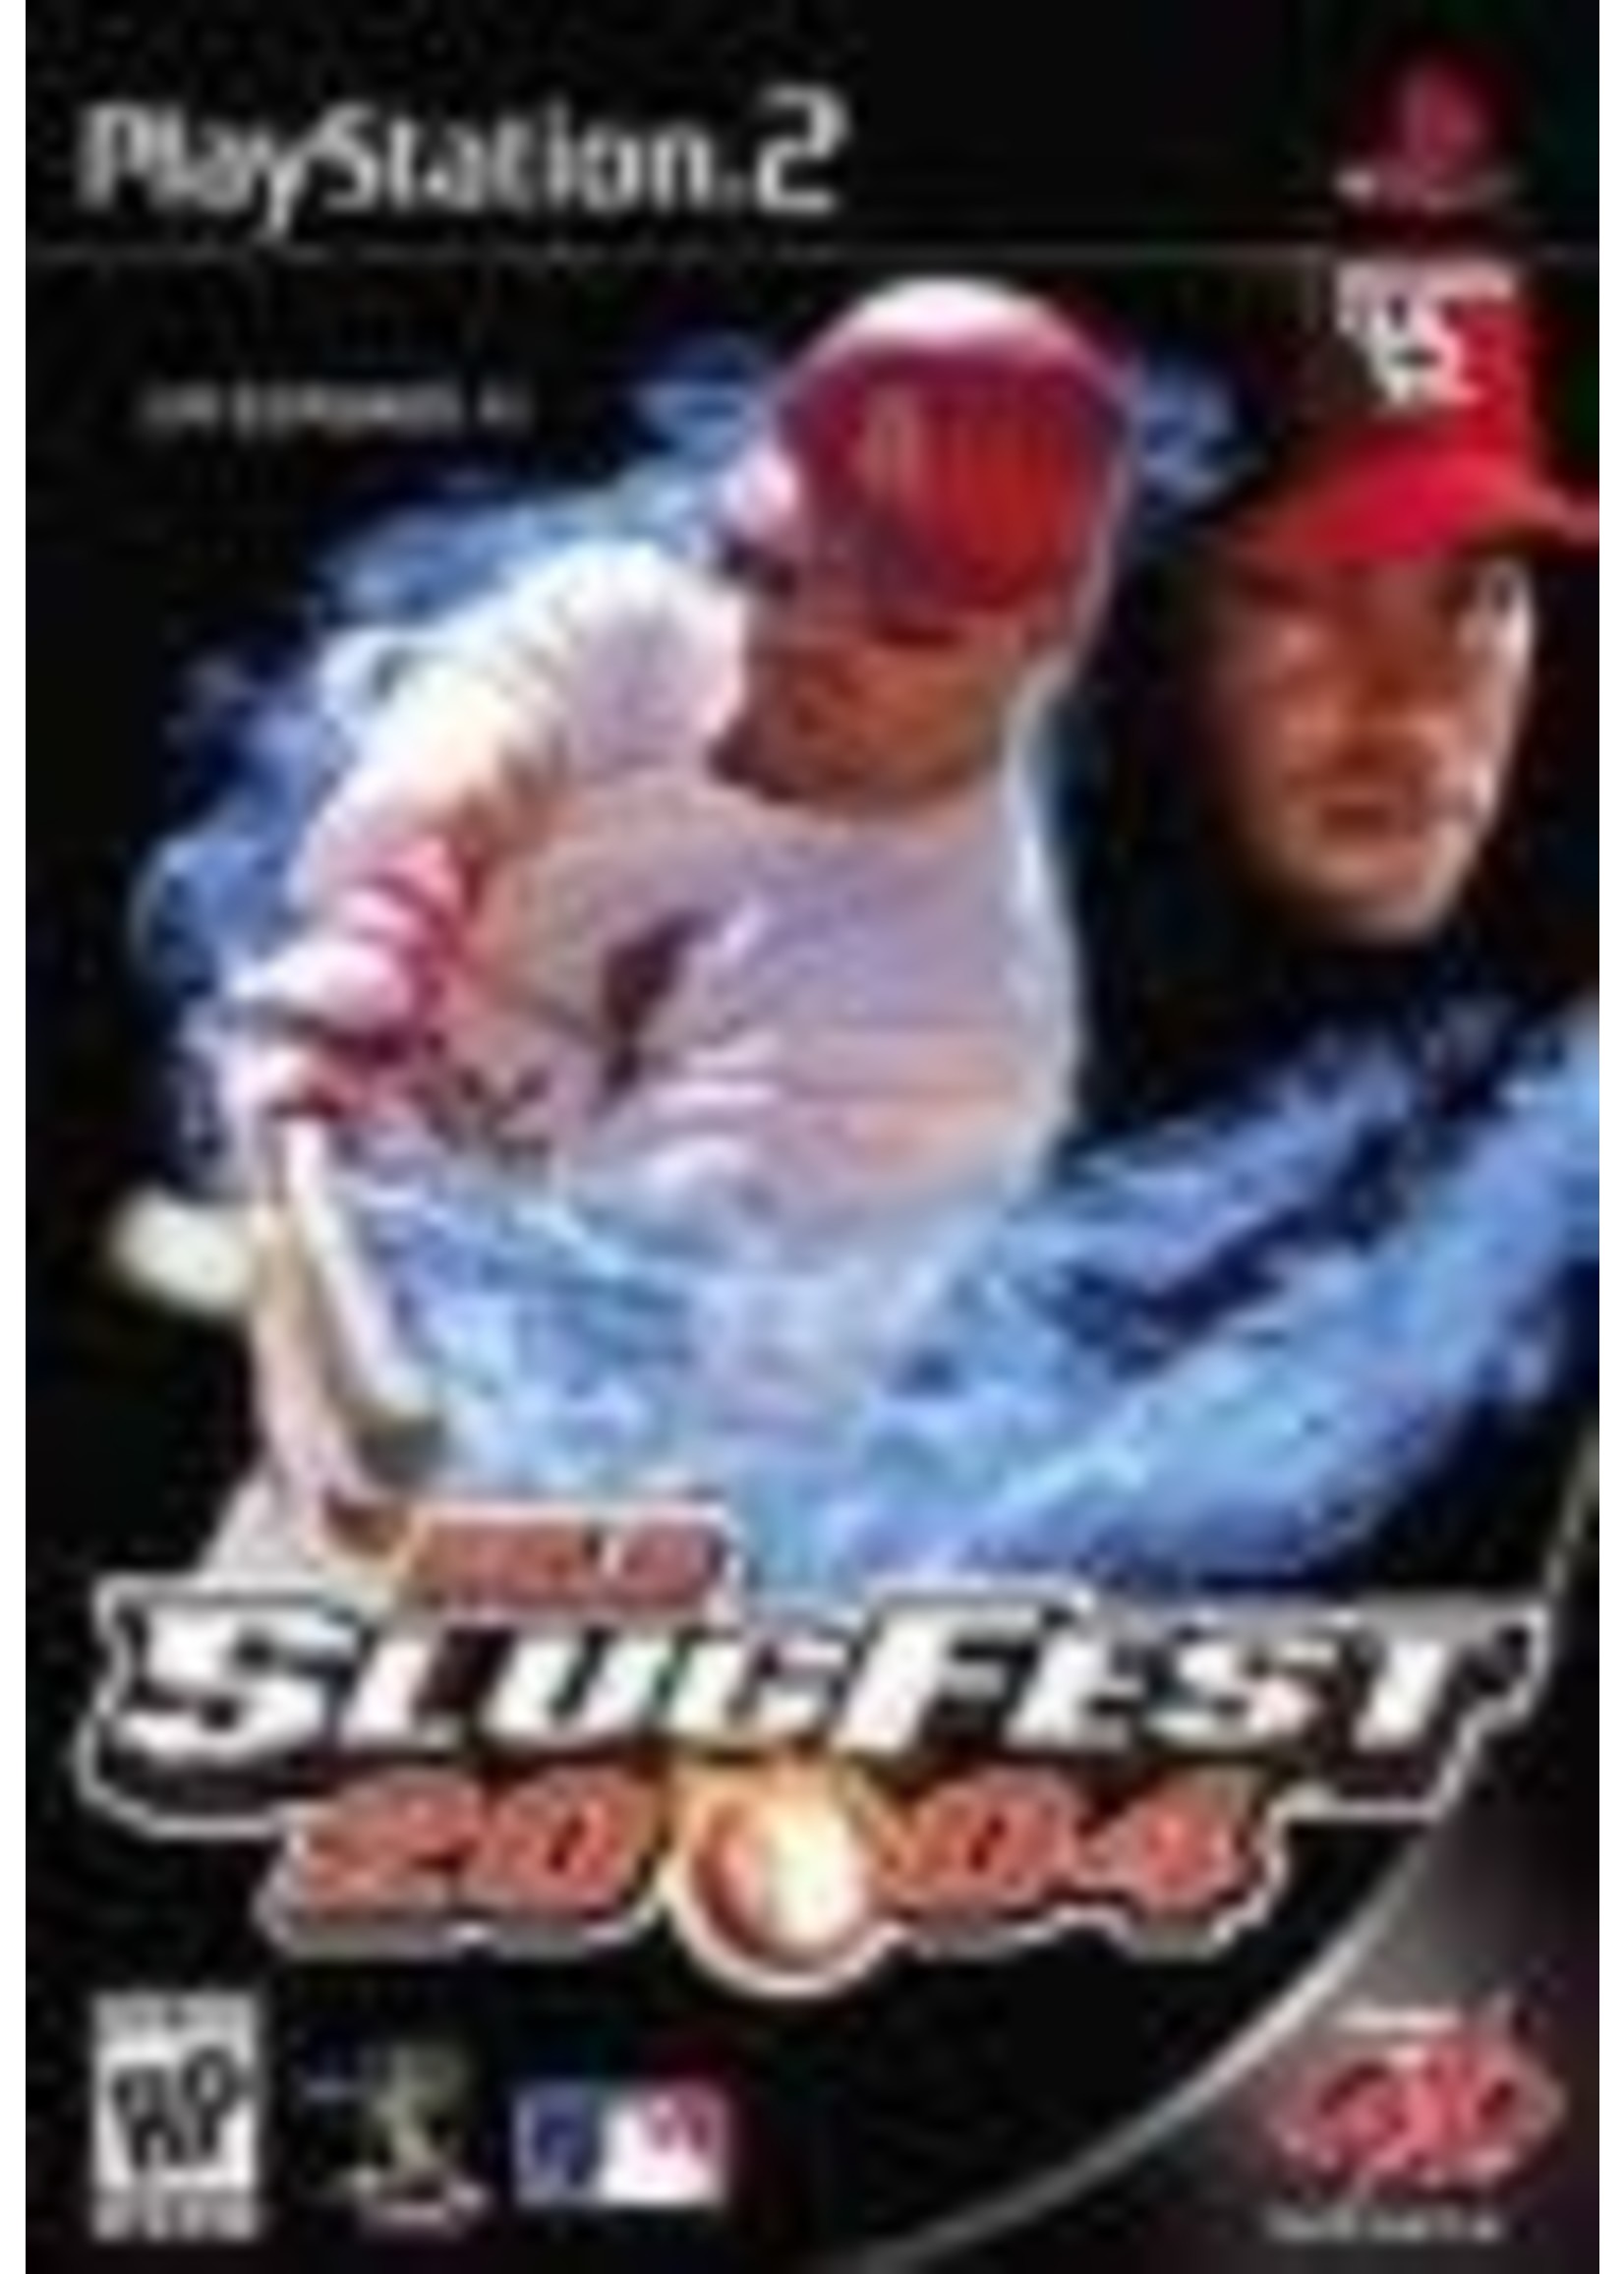 MLB Slugfest 2004 Playstation 2